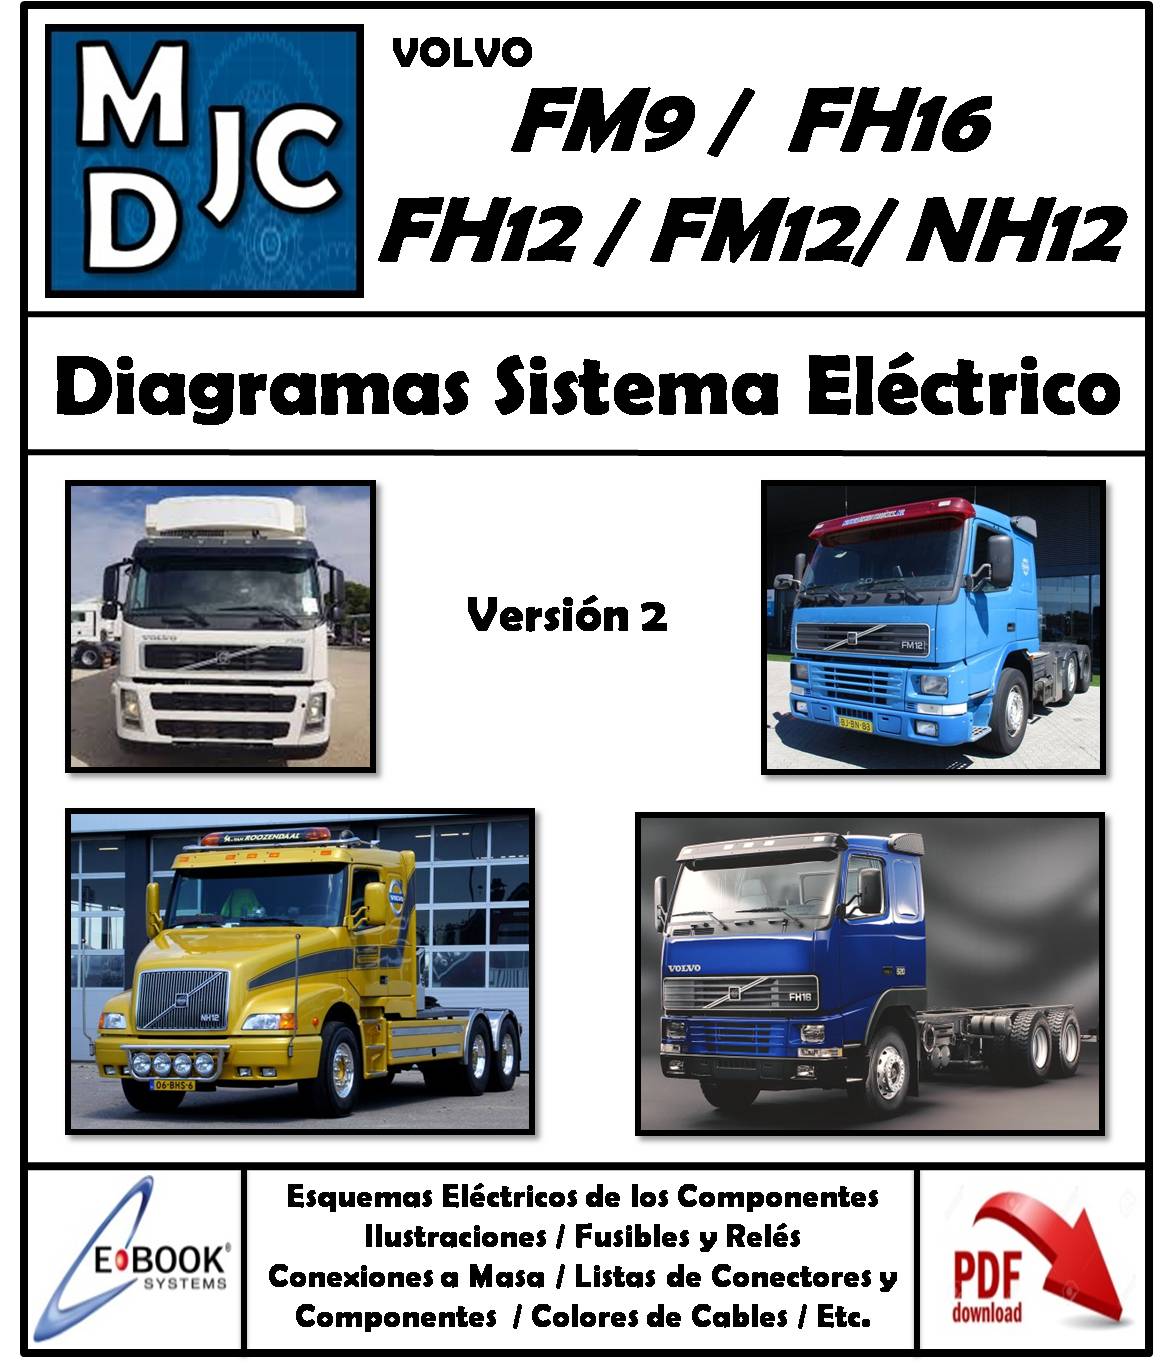 Volvo FM9 / FM12 / FH12/ FH16 / NH12 (Versión 2)